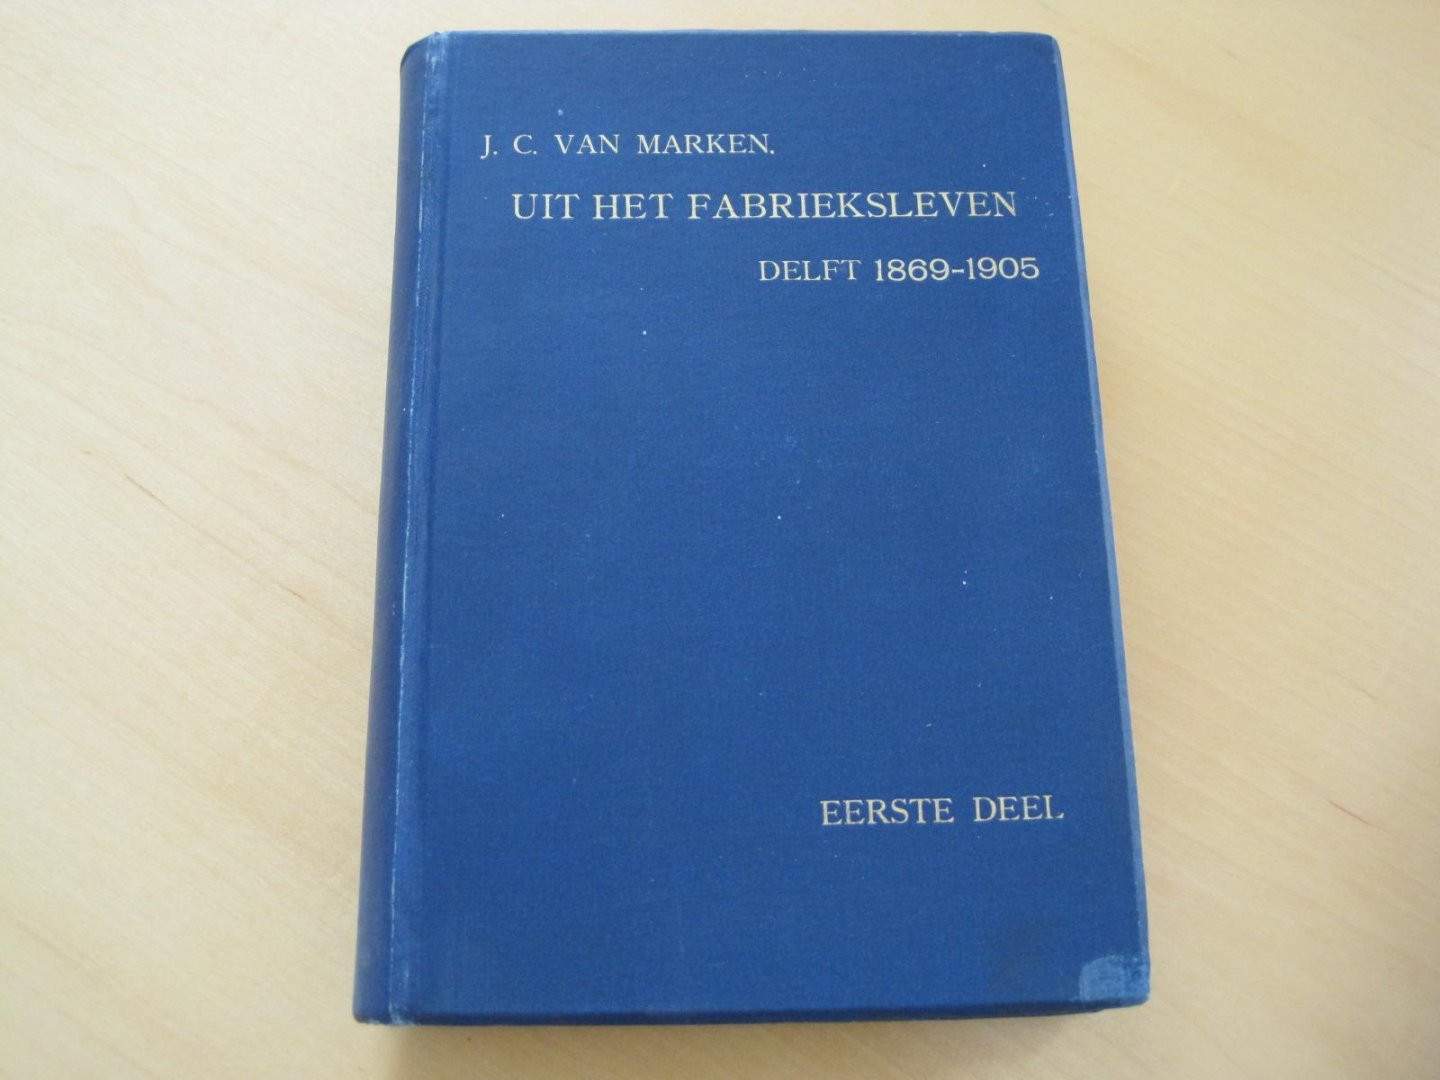 Marken, J. C. van - Uit het fabrieksleven. Delft 1869-1905. Drie delen.